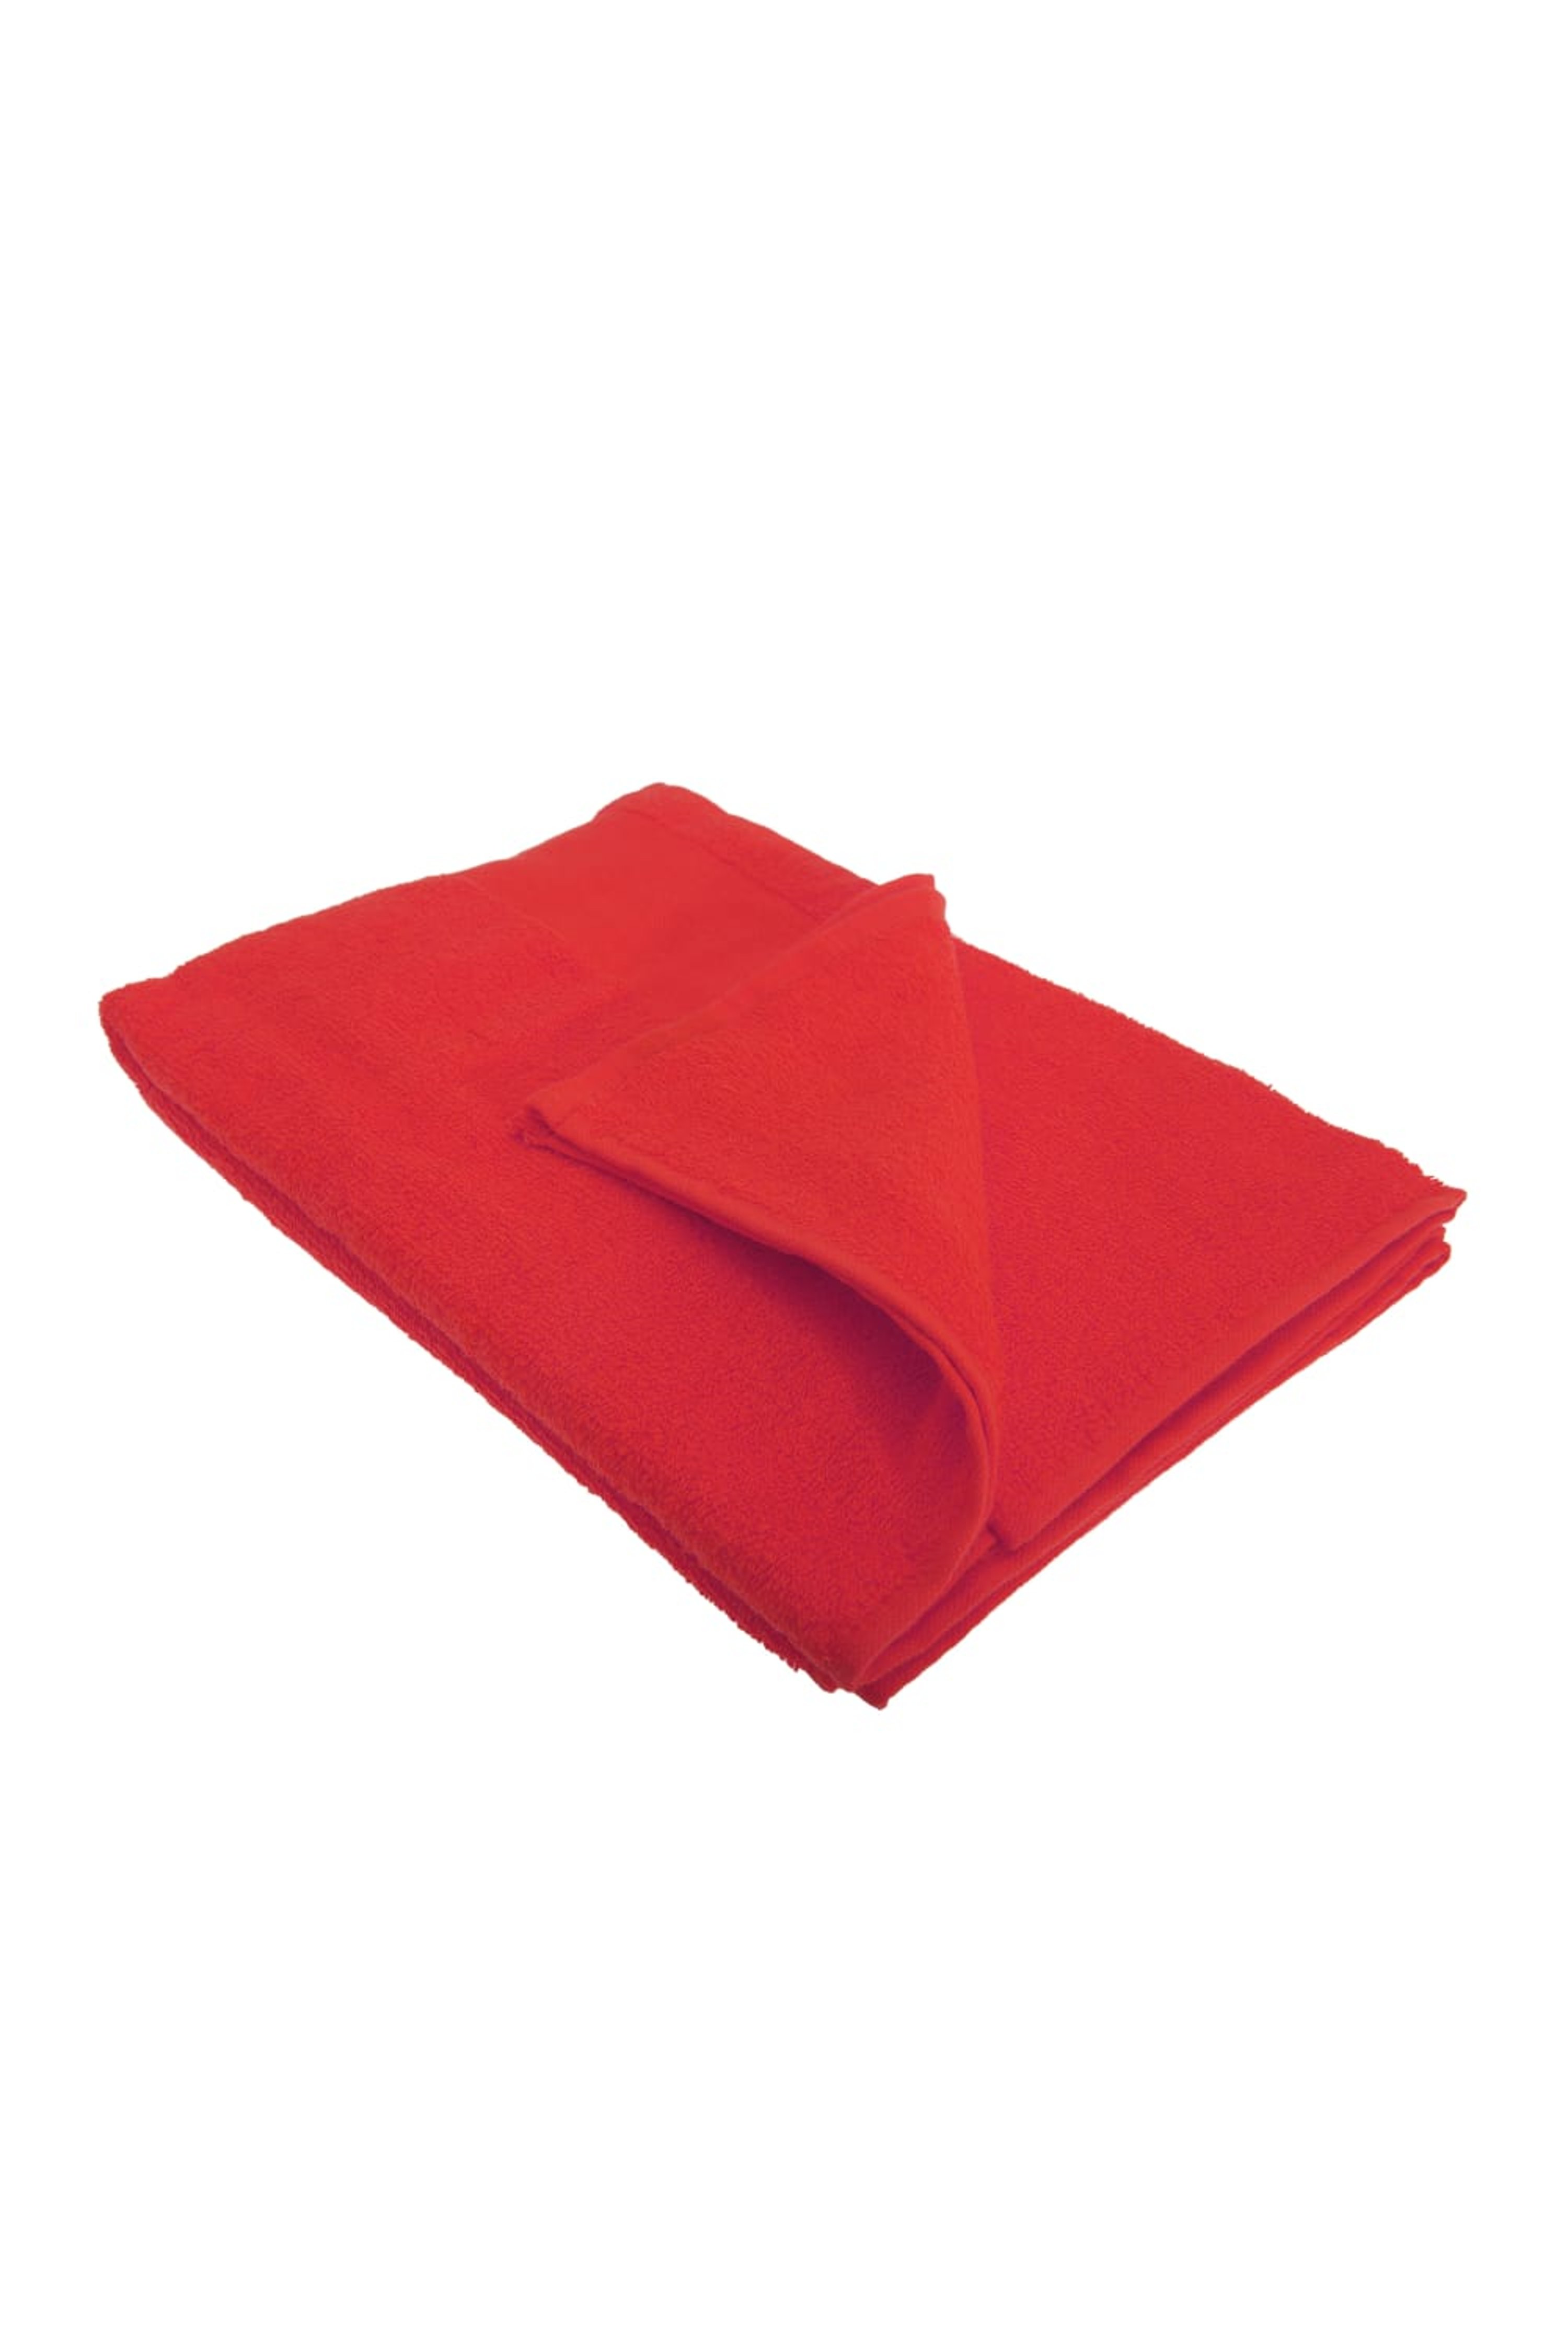 SOLS SOLS SOLS ISLAND BATH TOWEL (30 X 56 INCHES) (RED) (ONE)